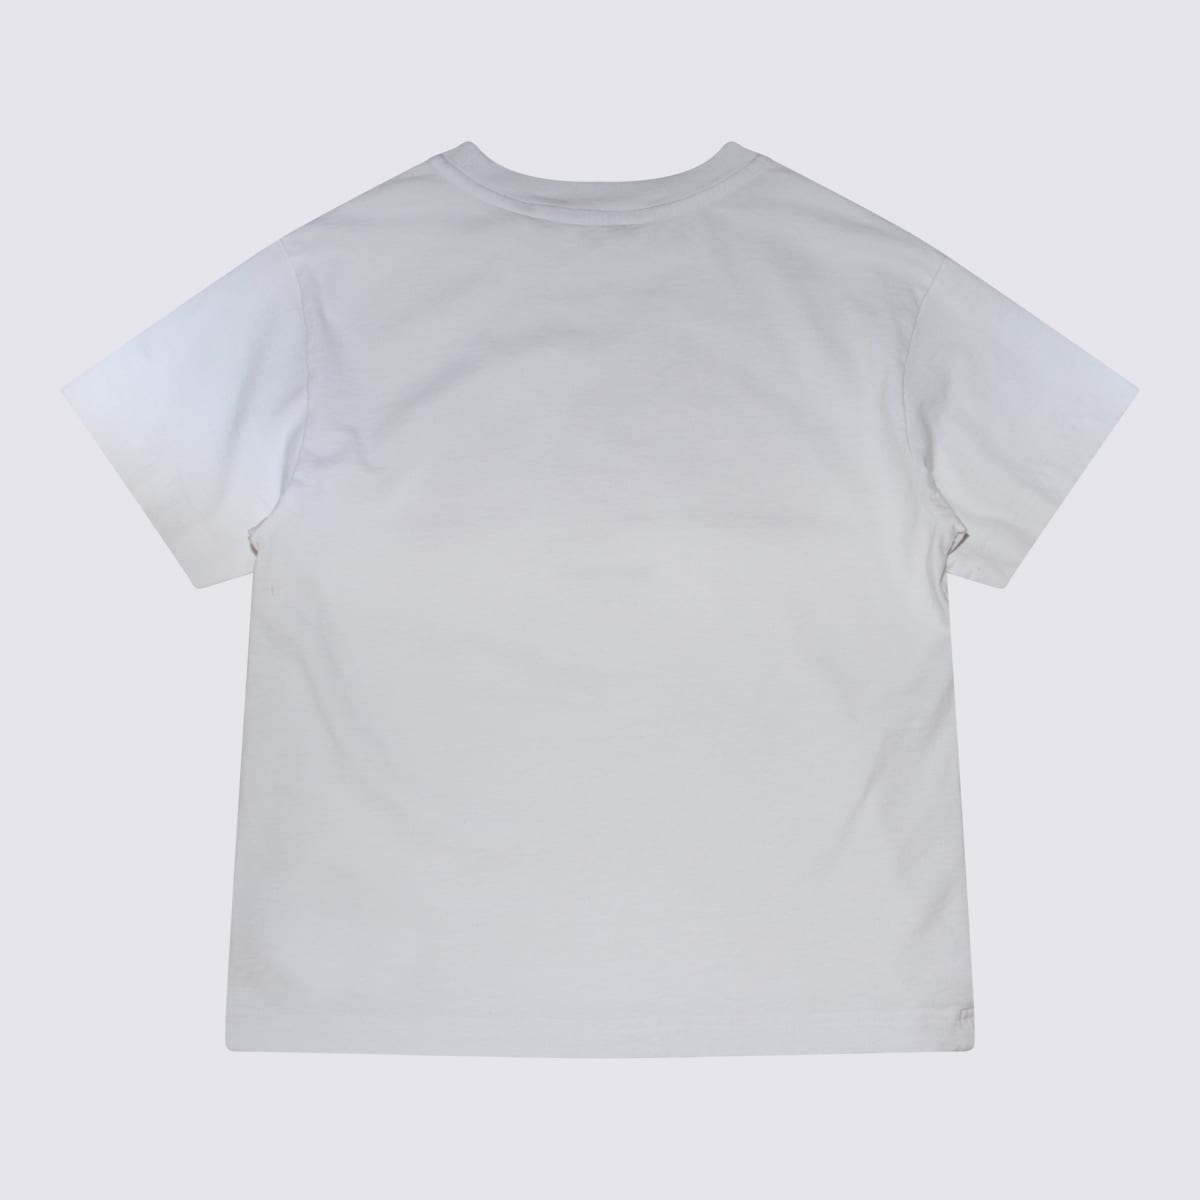 Shop Palm Angels White Cotton T-shirt